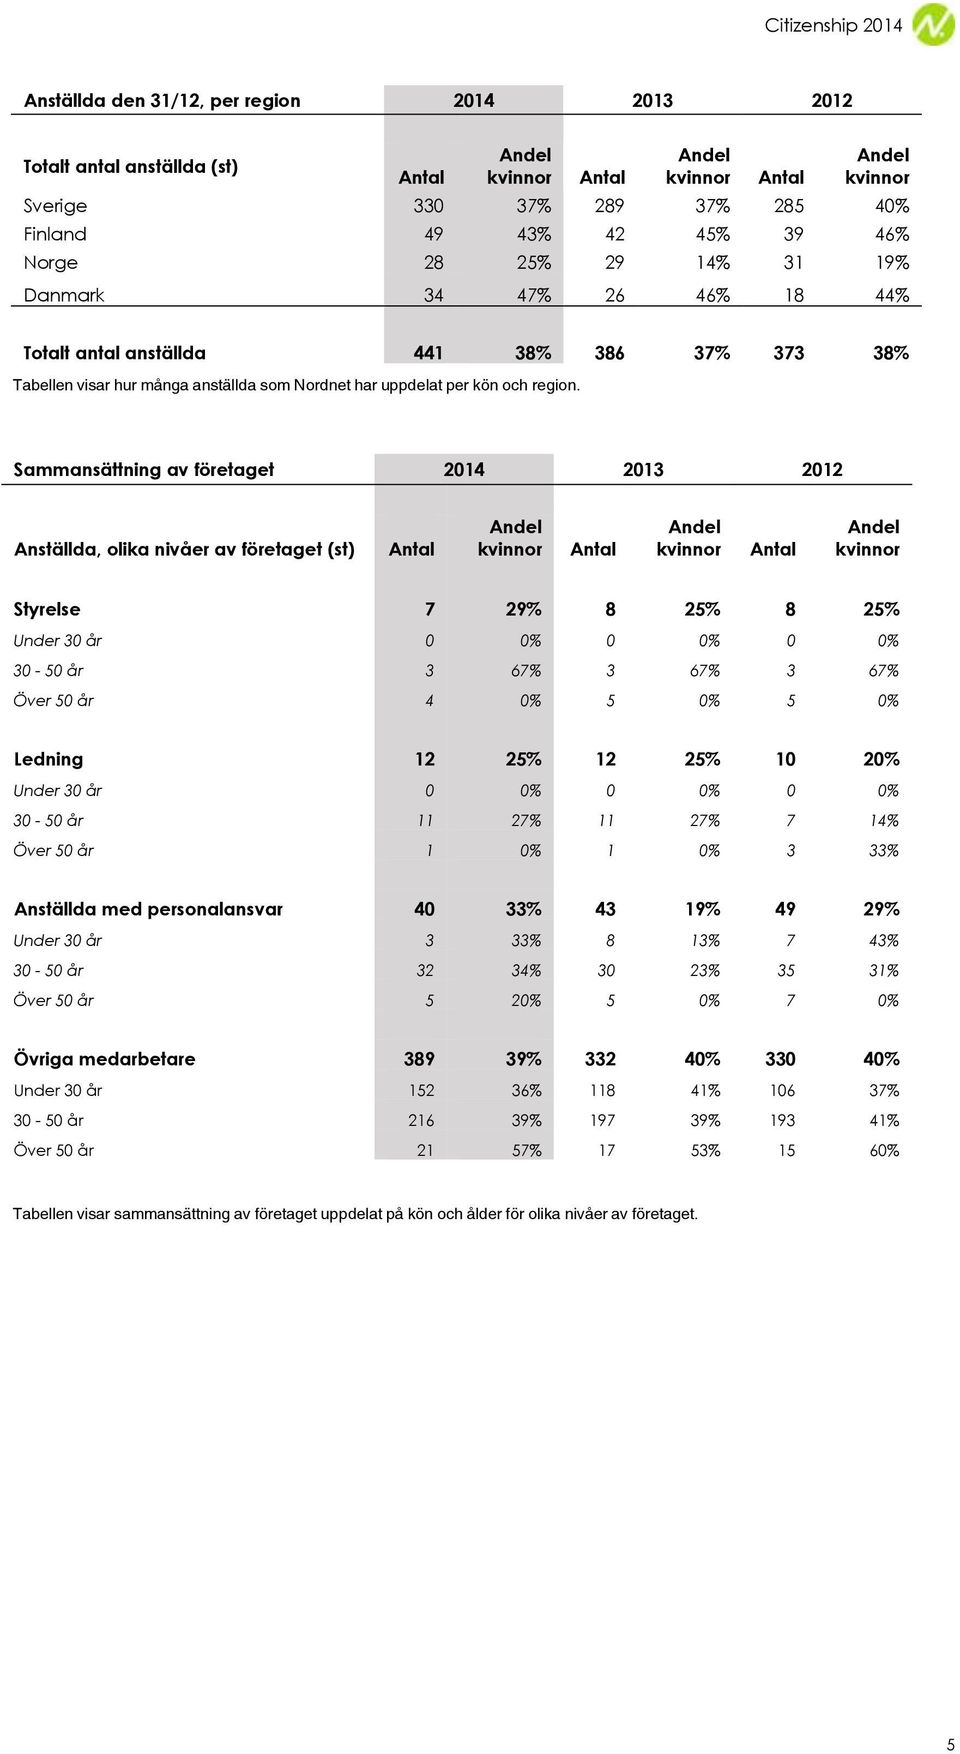 Sammansättning av företaget 2014 2013 2012 Anställda, olika nivåer av företaget (st) Styrelse 7 29% 8 25% 8 25% Under 30 år 0 0% 0 0% 0 0% 30-50 år 3 67% 3 67% 3 67% Över 50 år 4 0% 5 0% 5 0% Ledning